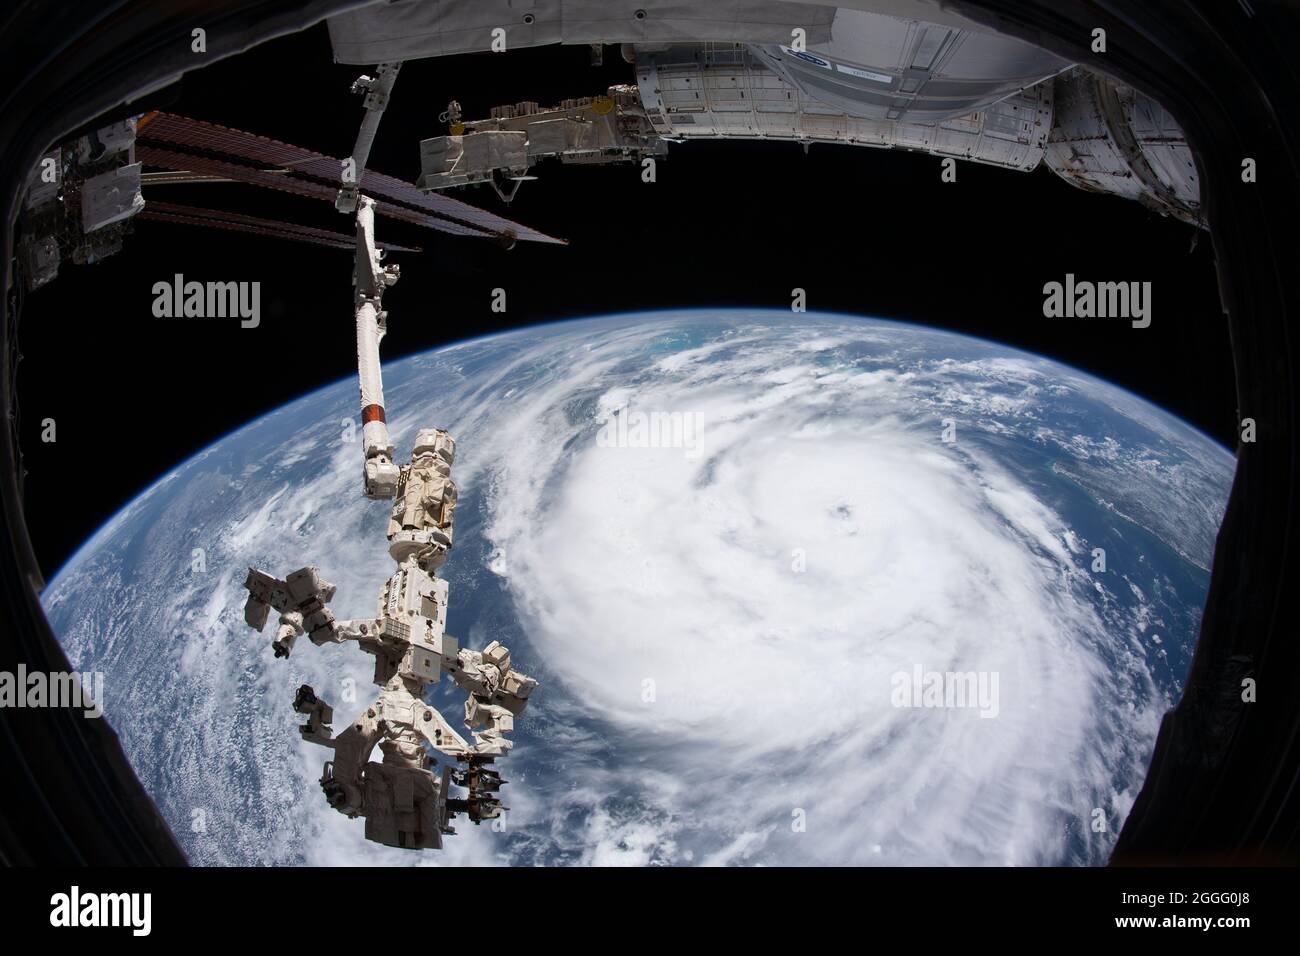 Vista que muestra la pared ocular del huracán Ida, una tormenta de categoría 4 que golpea la costa del Bajo Louisiana tomada de la Estación Espacial Internacional el 28 de agosto de 2021 por encima de Nueva Orleans, Louisiana. Ida está empacando vientos de 150 mph que se hicieron tierra hace 16 años hasta el día del huracán Katrina. Foto de stock